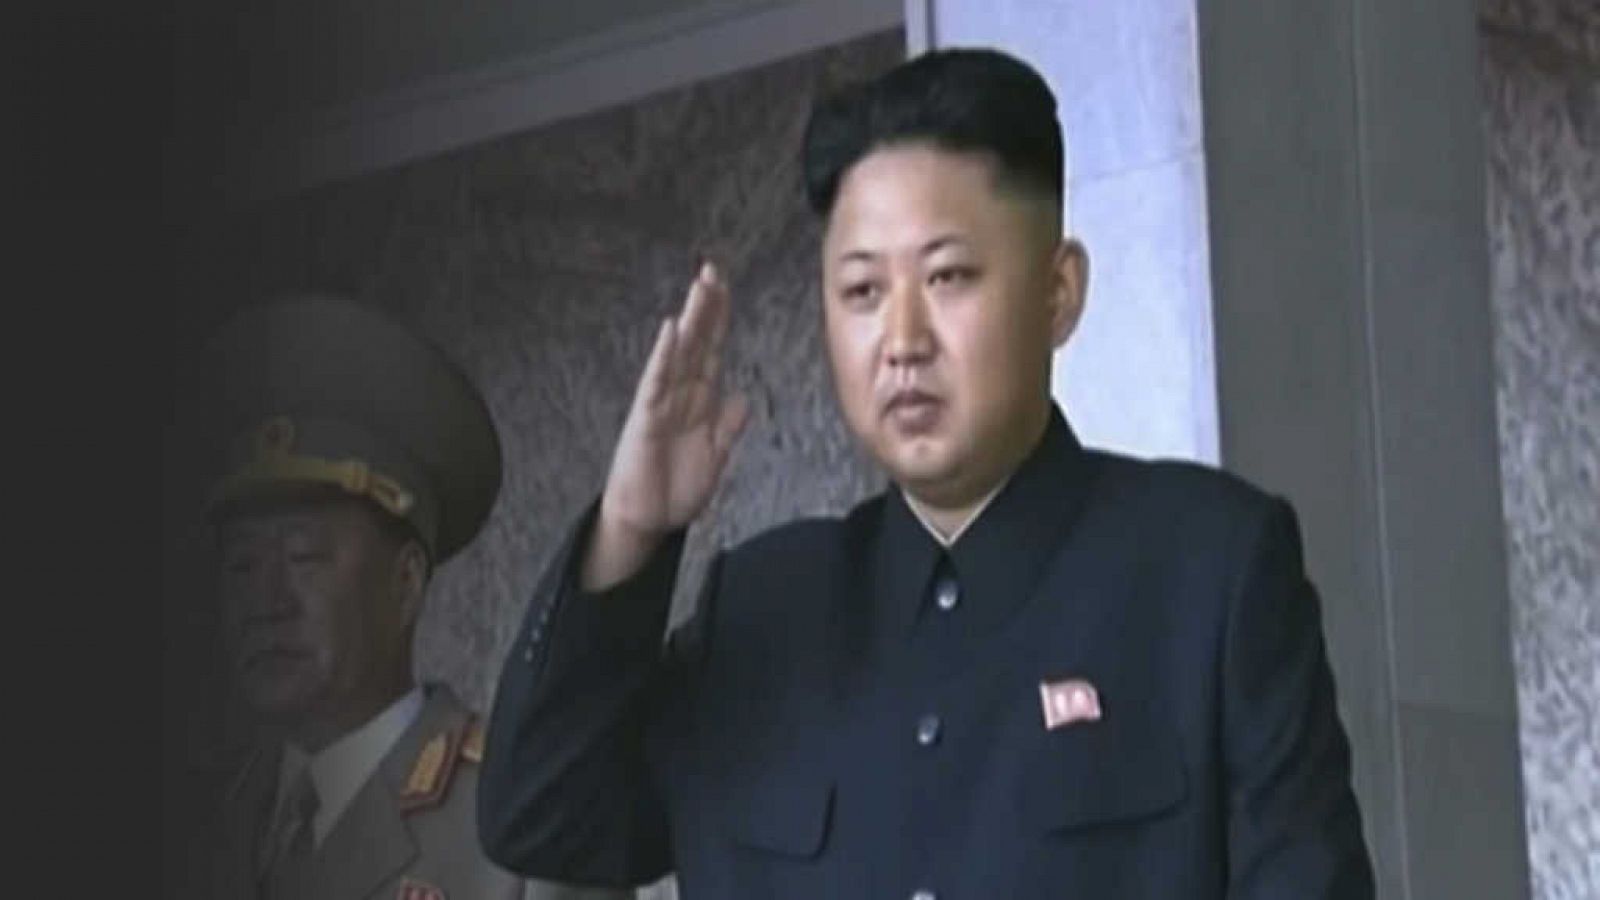 La noche temática - Kim Jong Un, biografía no autorizada